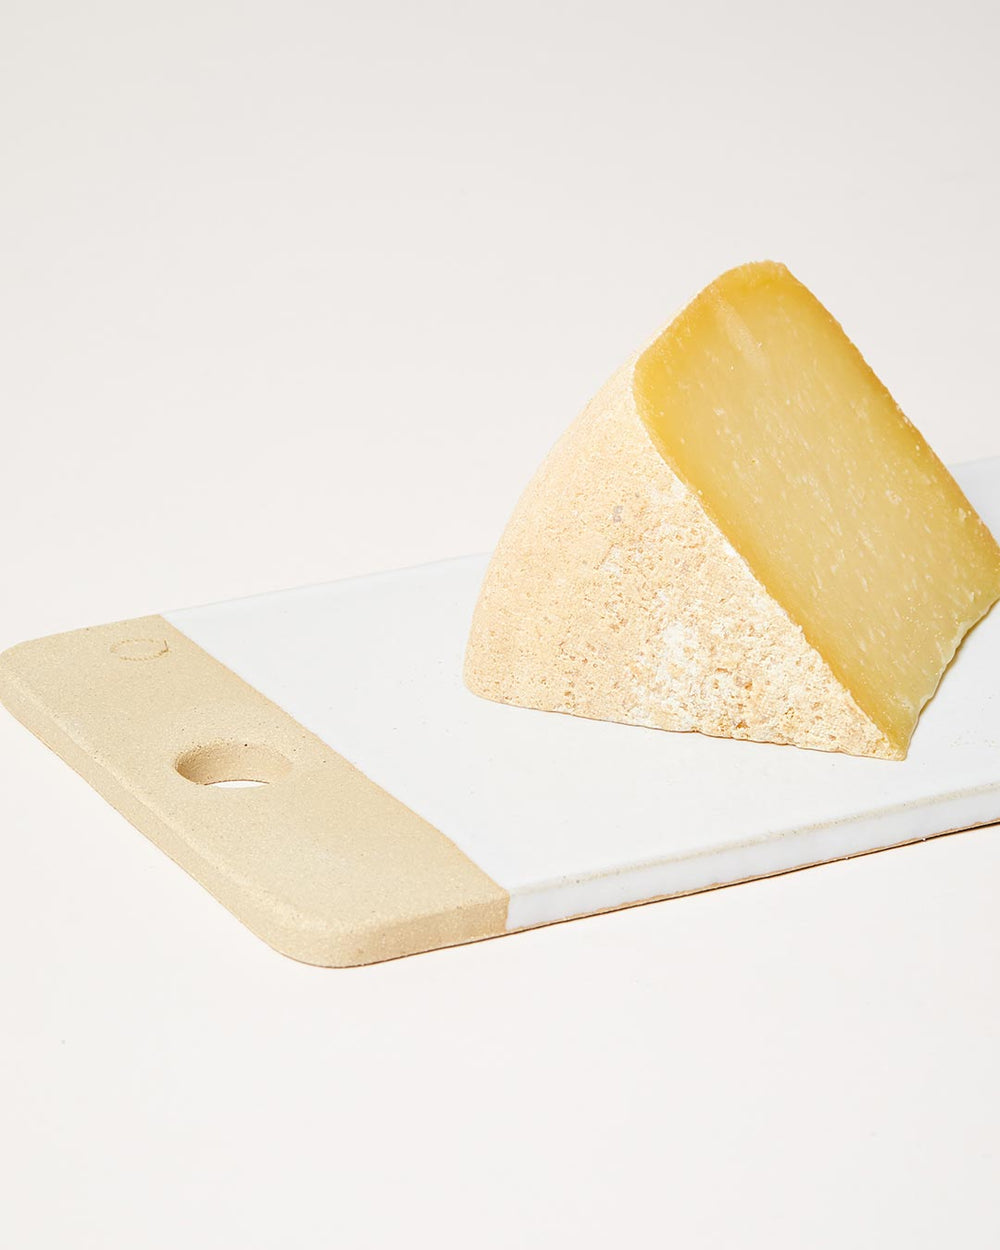 Rectangular Cheese Stone - Medium